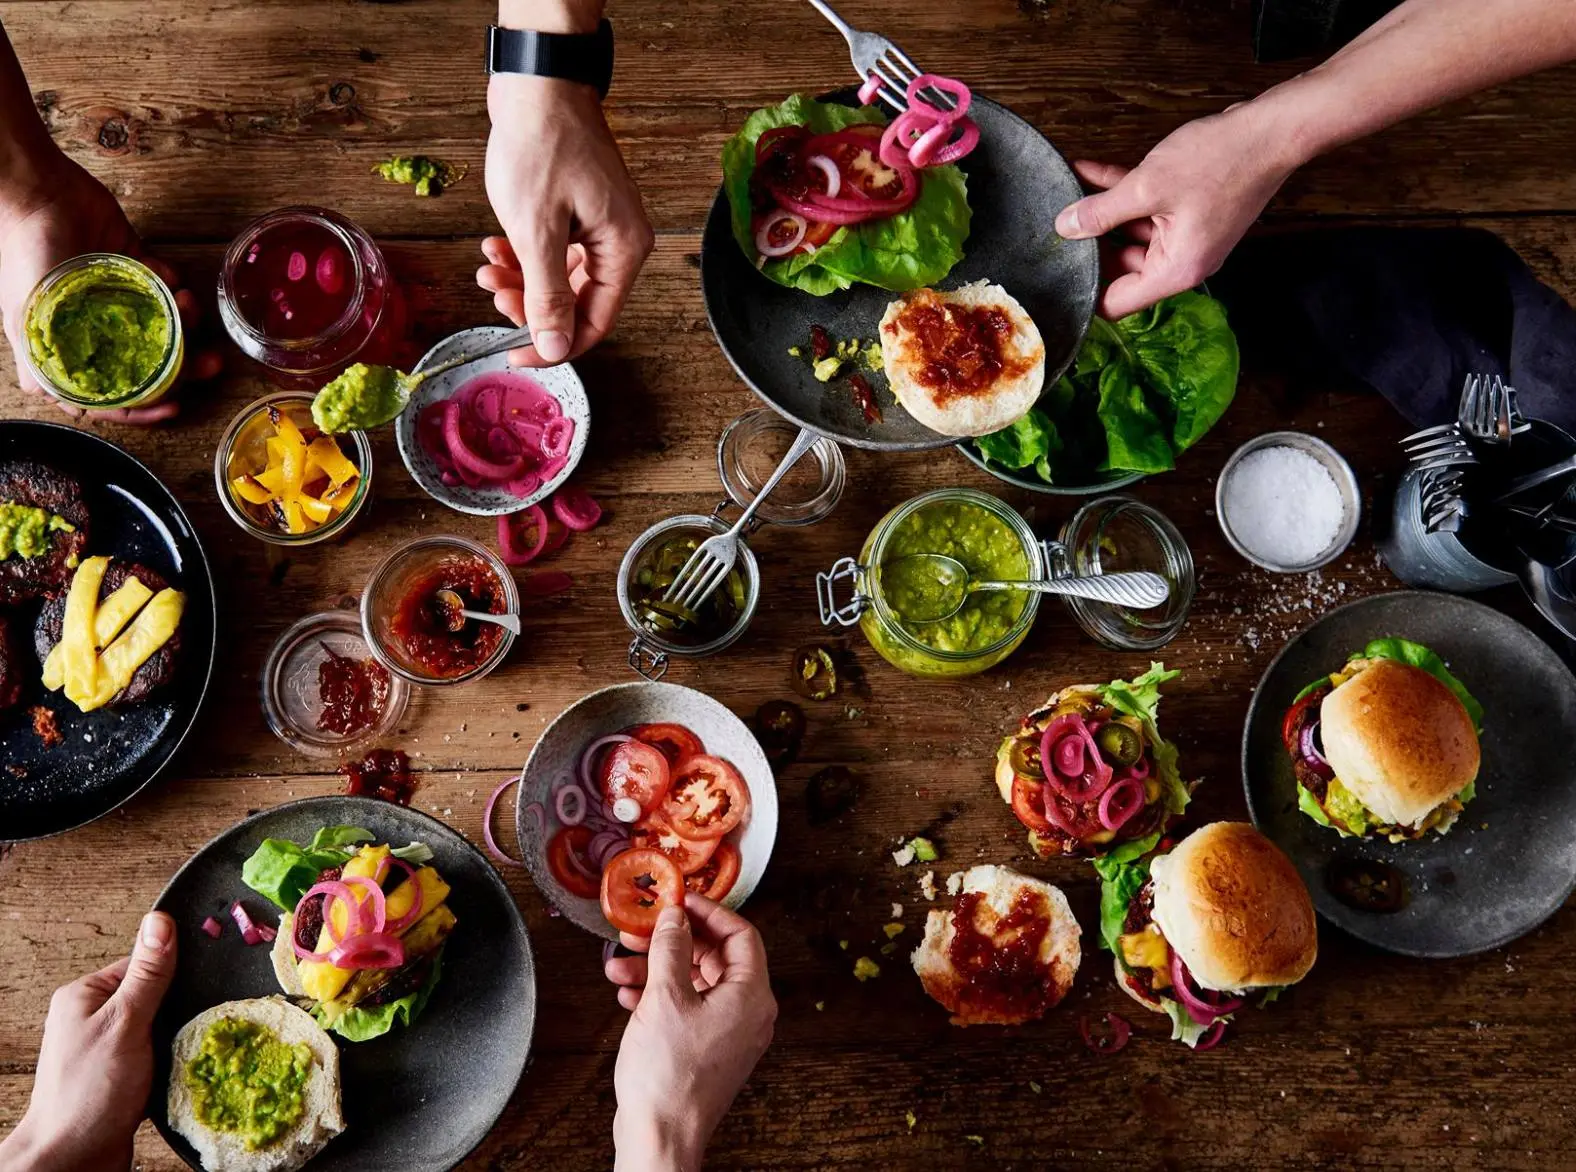 Vários pratos de comida vegana em cima da mesa, algumas mãos estão pegando alimentos deles.